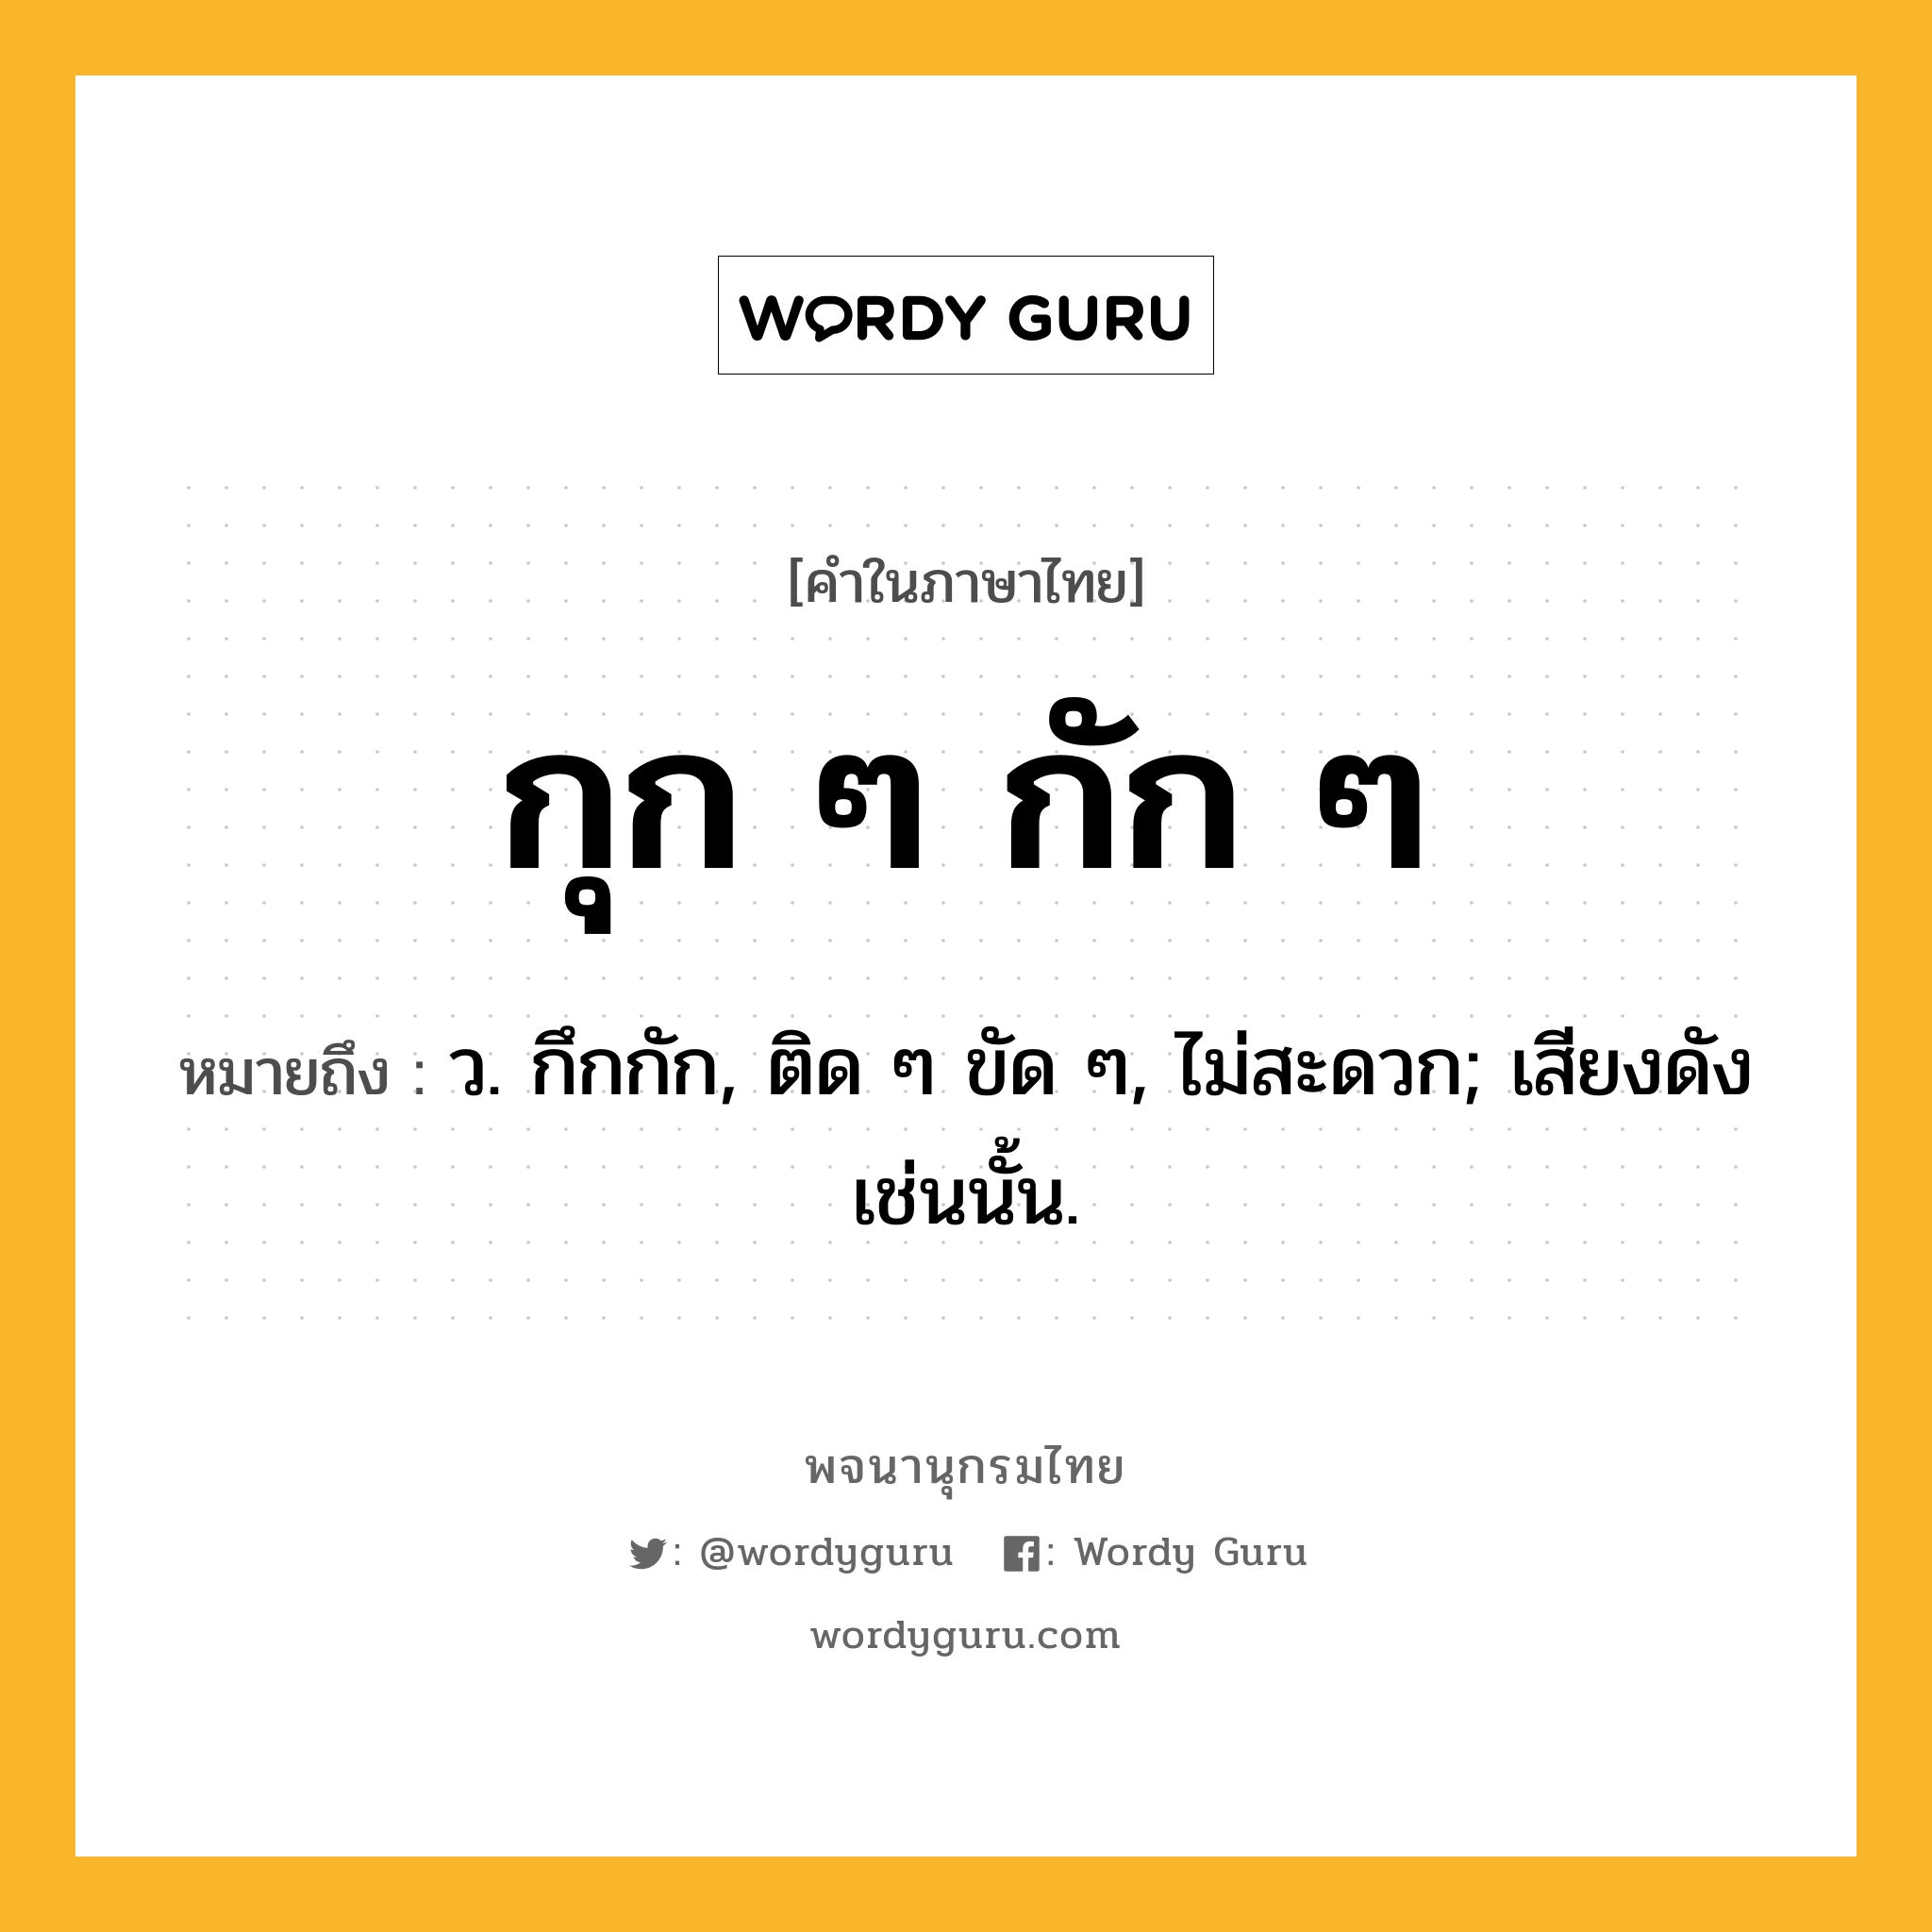 กุก ๆ กัก ๆ ความหมาย หมายถึงอะไร?, คำในภาษาไทย กุก ๆ กัก ๆ หมายถึง ว. กึกกัก, ติด ๆ ขัด ๆ, ไม่สะดวก; เสียงดังเช่นนั้น.